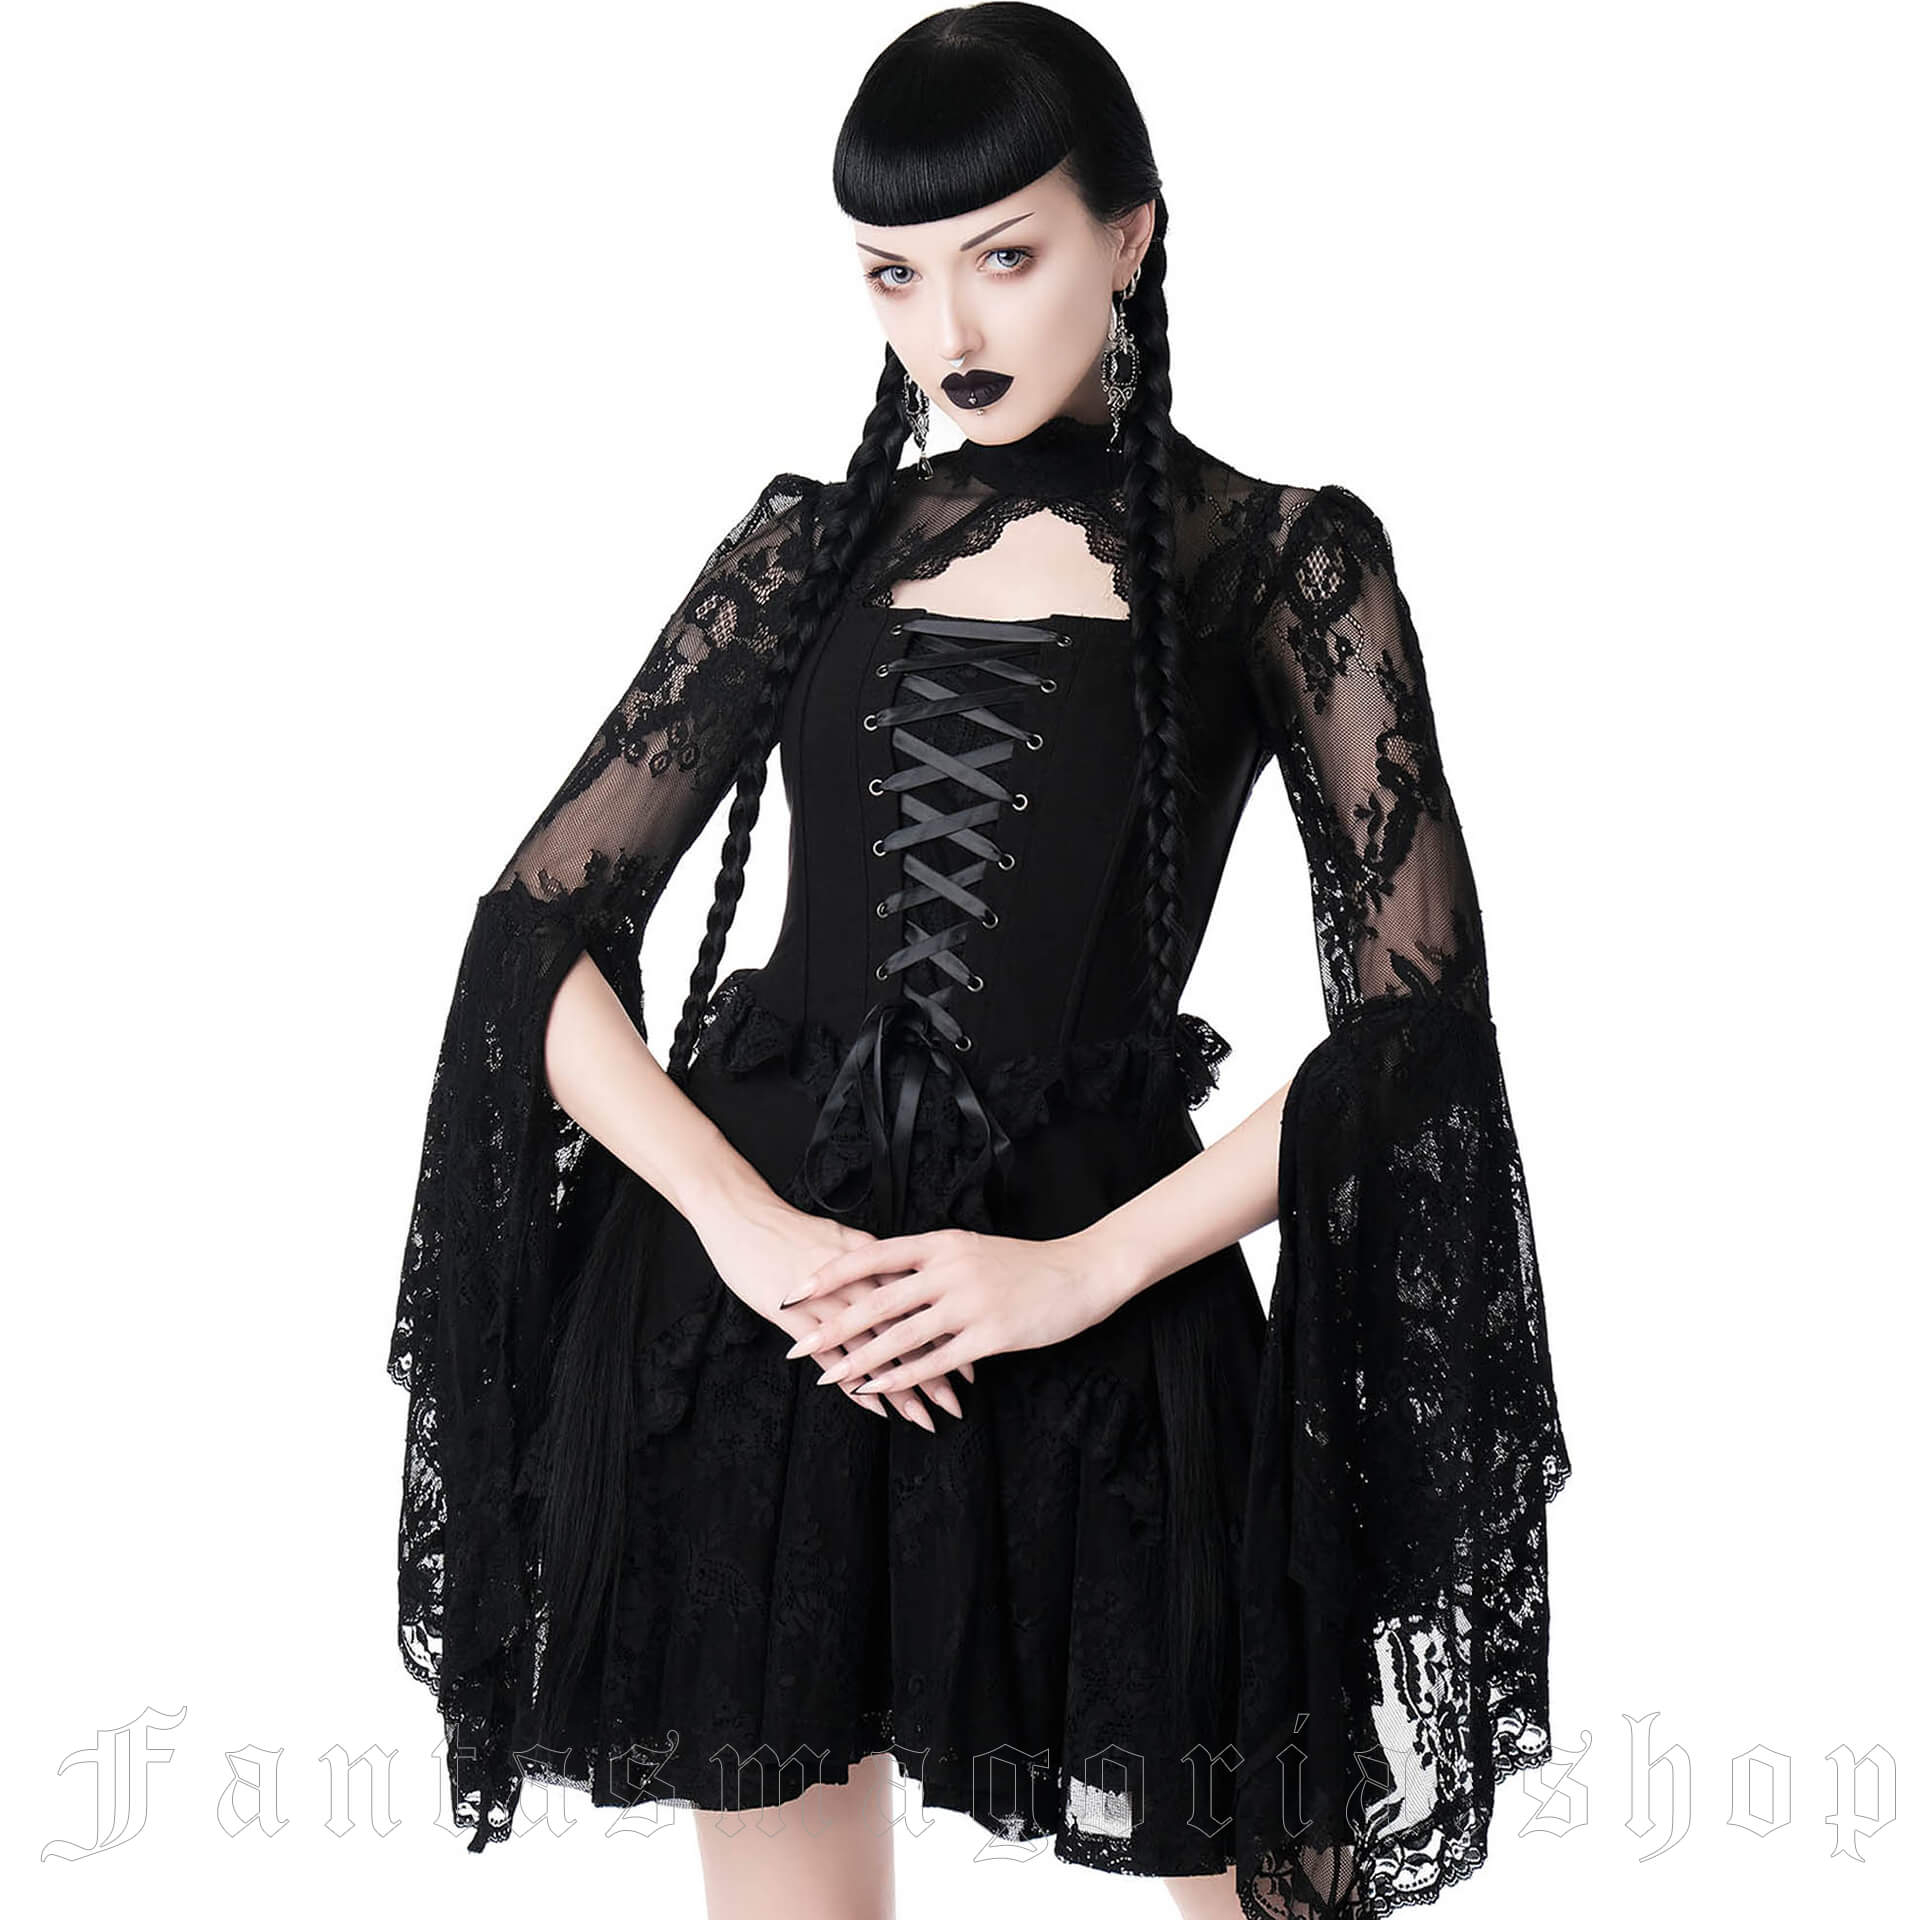 Dark Masquerade Dress KSRA002220 by KILLSTAR brand